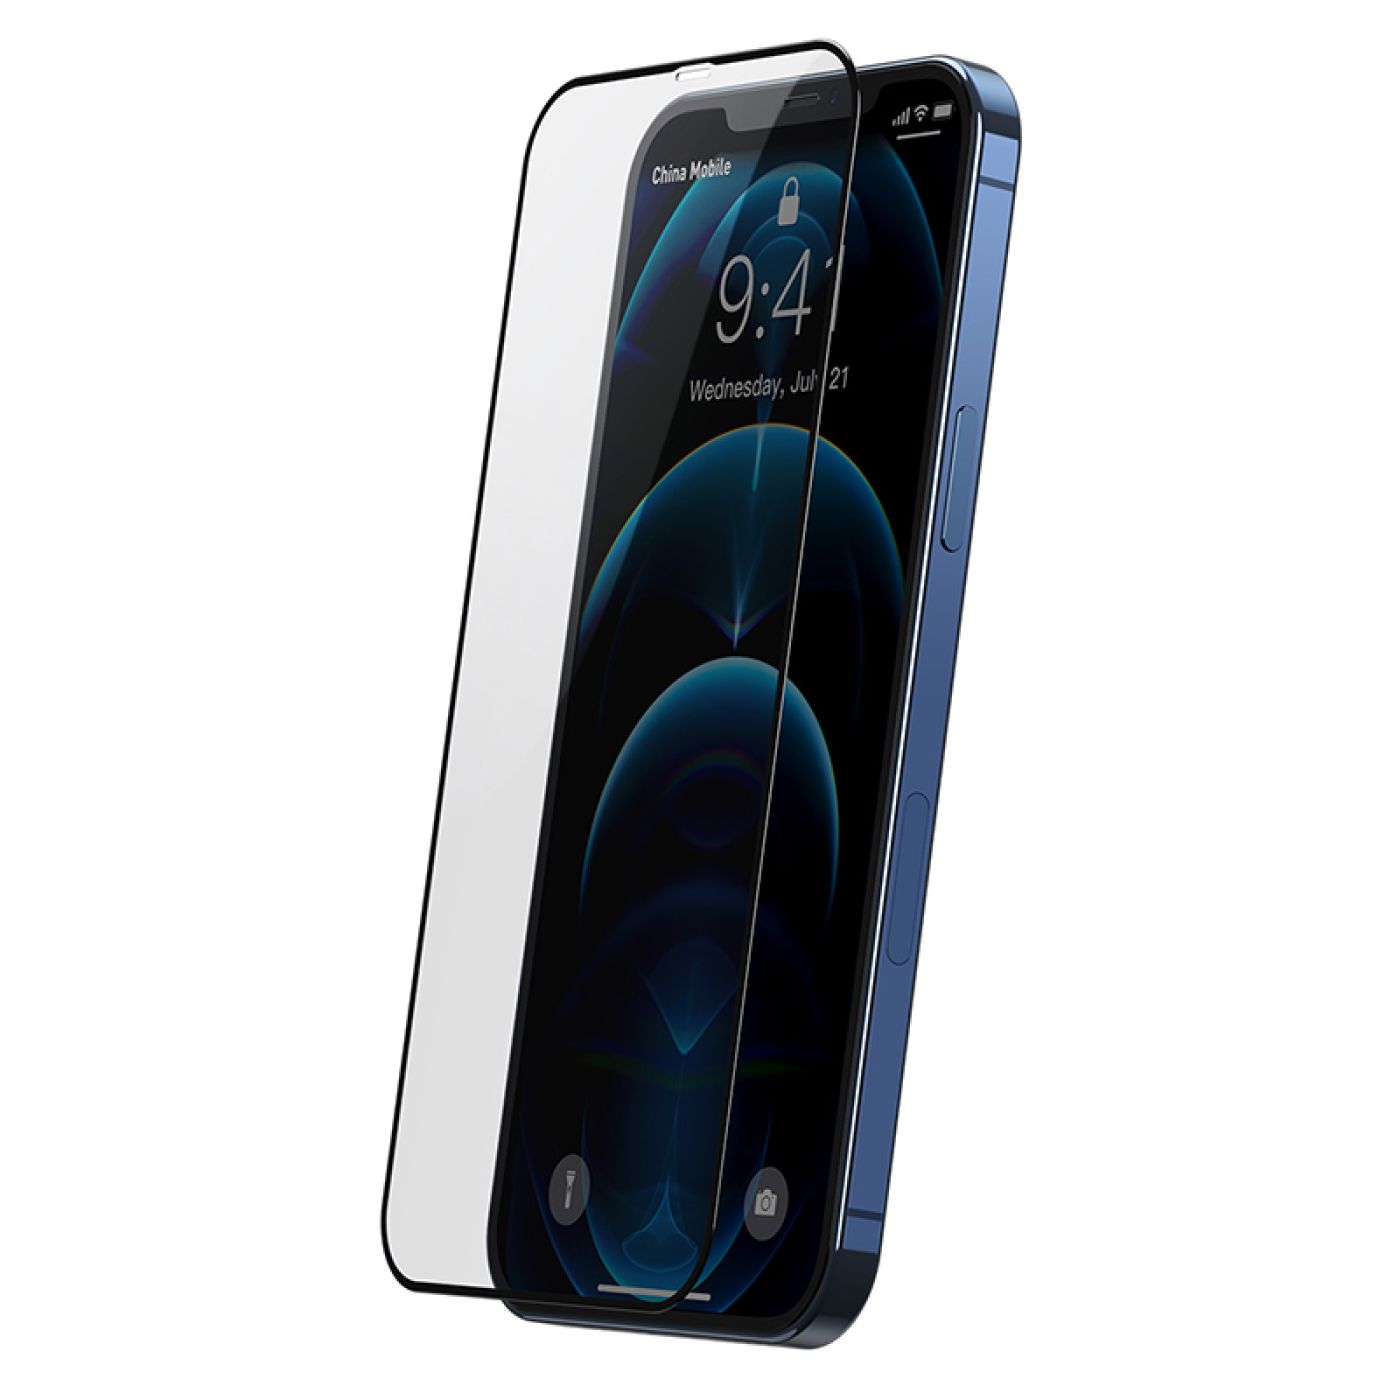 Kính cường lực 3D tràn viền dùng cho iPhone 12 Series Baseus full-Screen Curved Tempered Glass